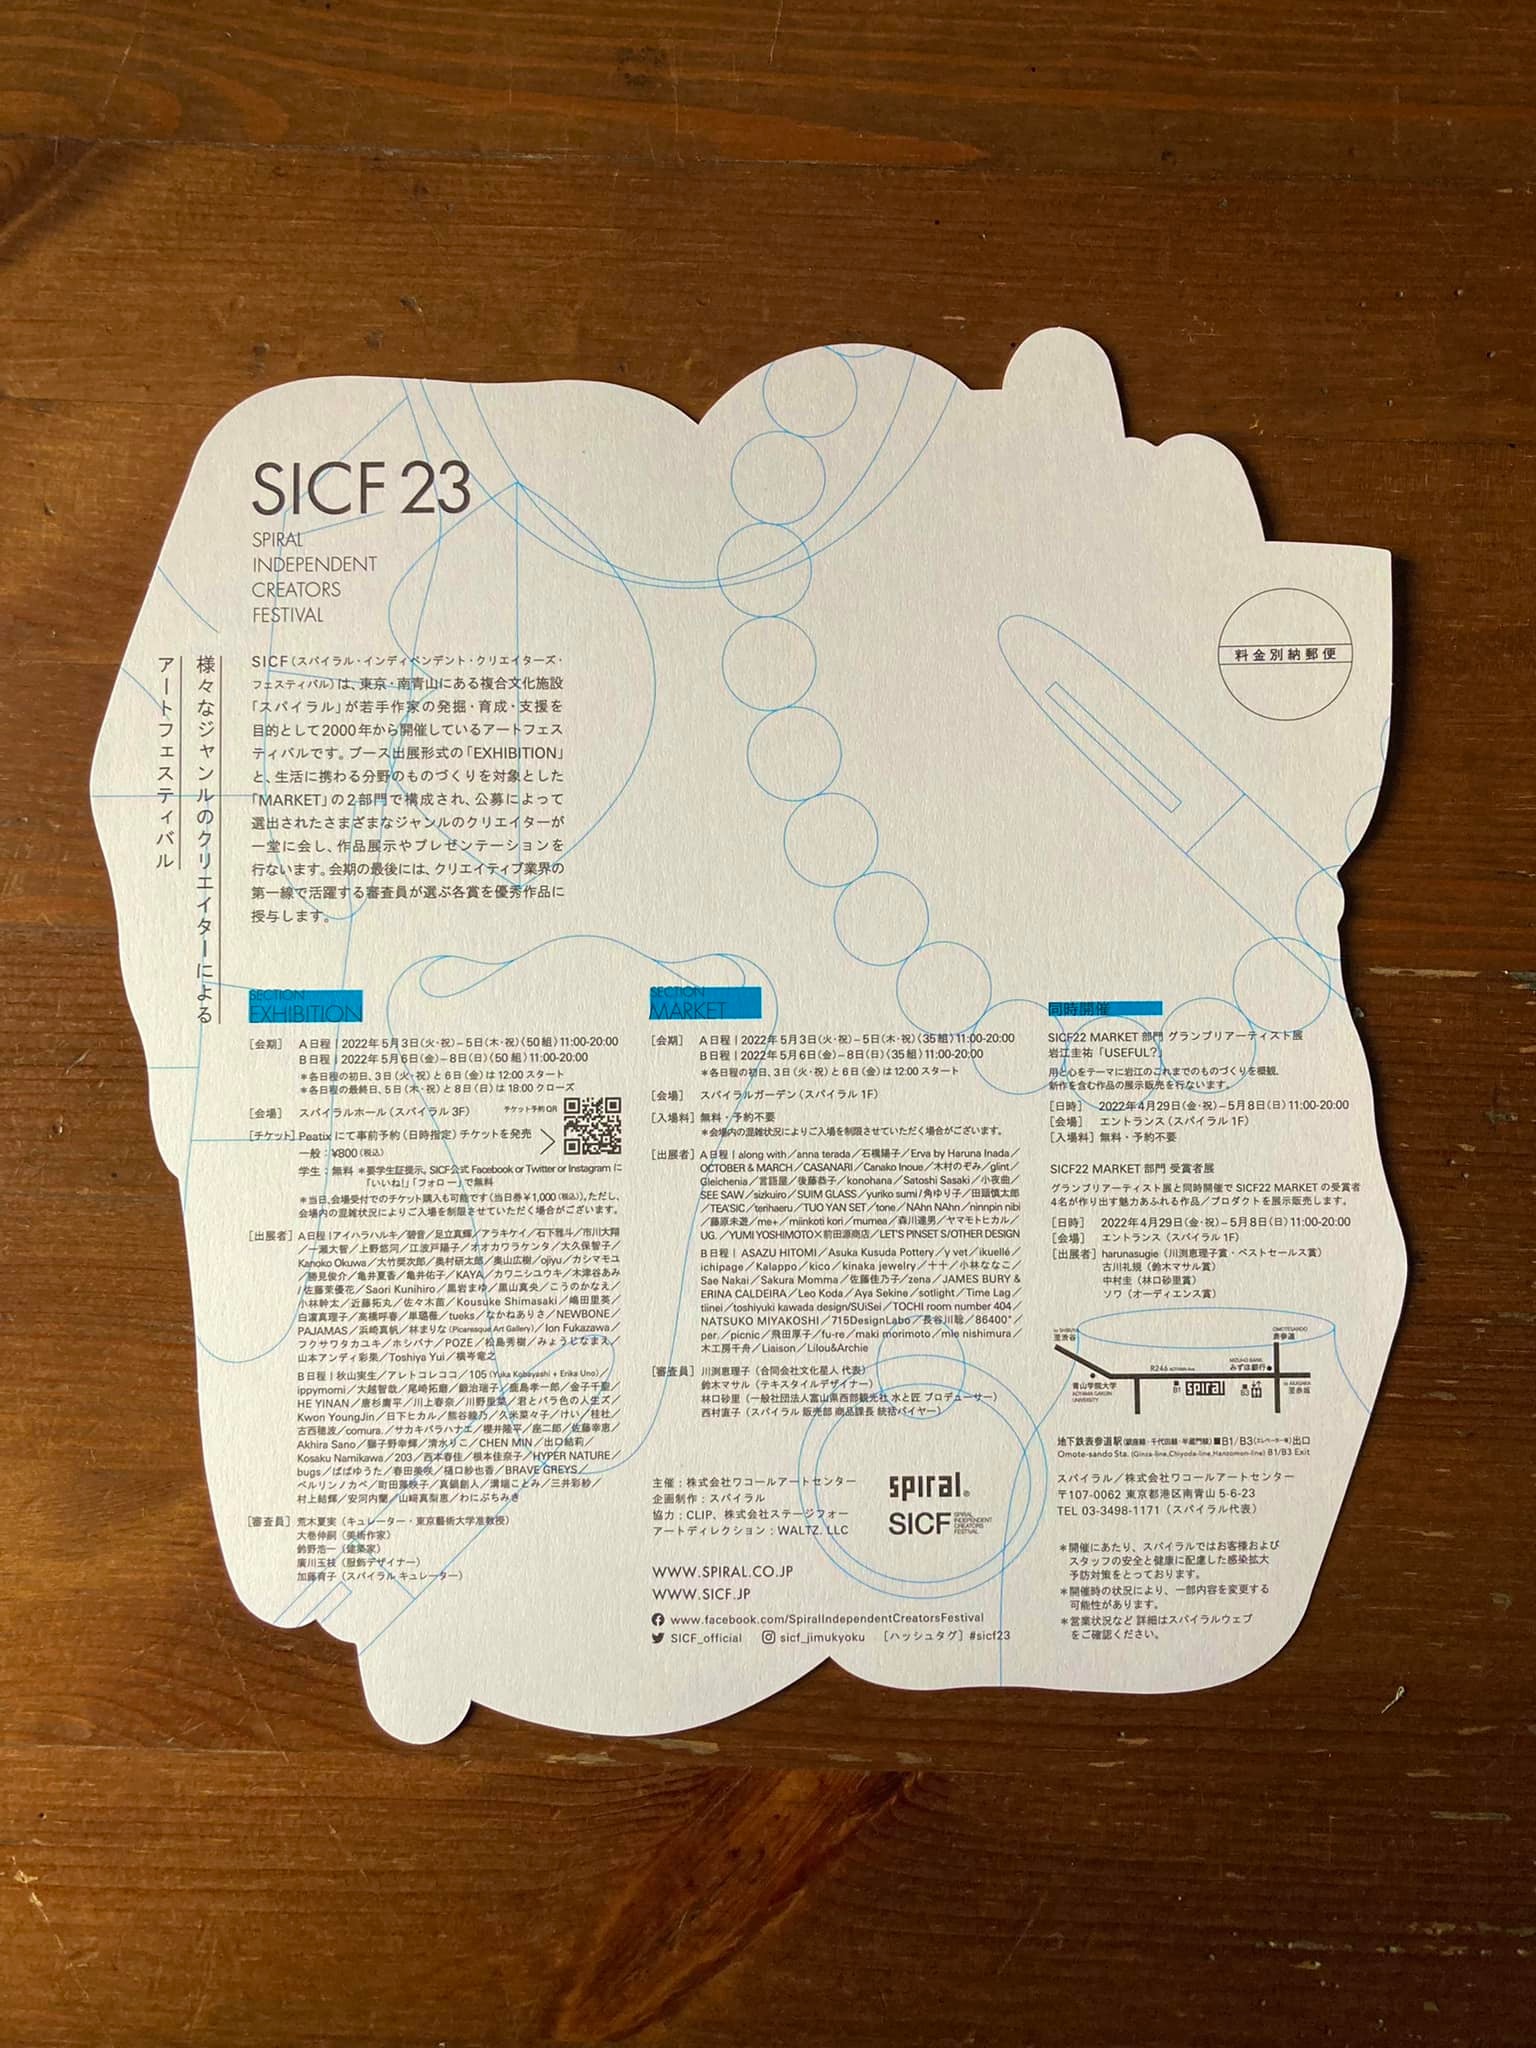 sicf03 【展示のお知らせ】SICF23に出展します。